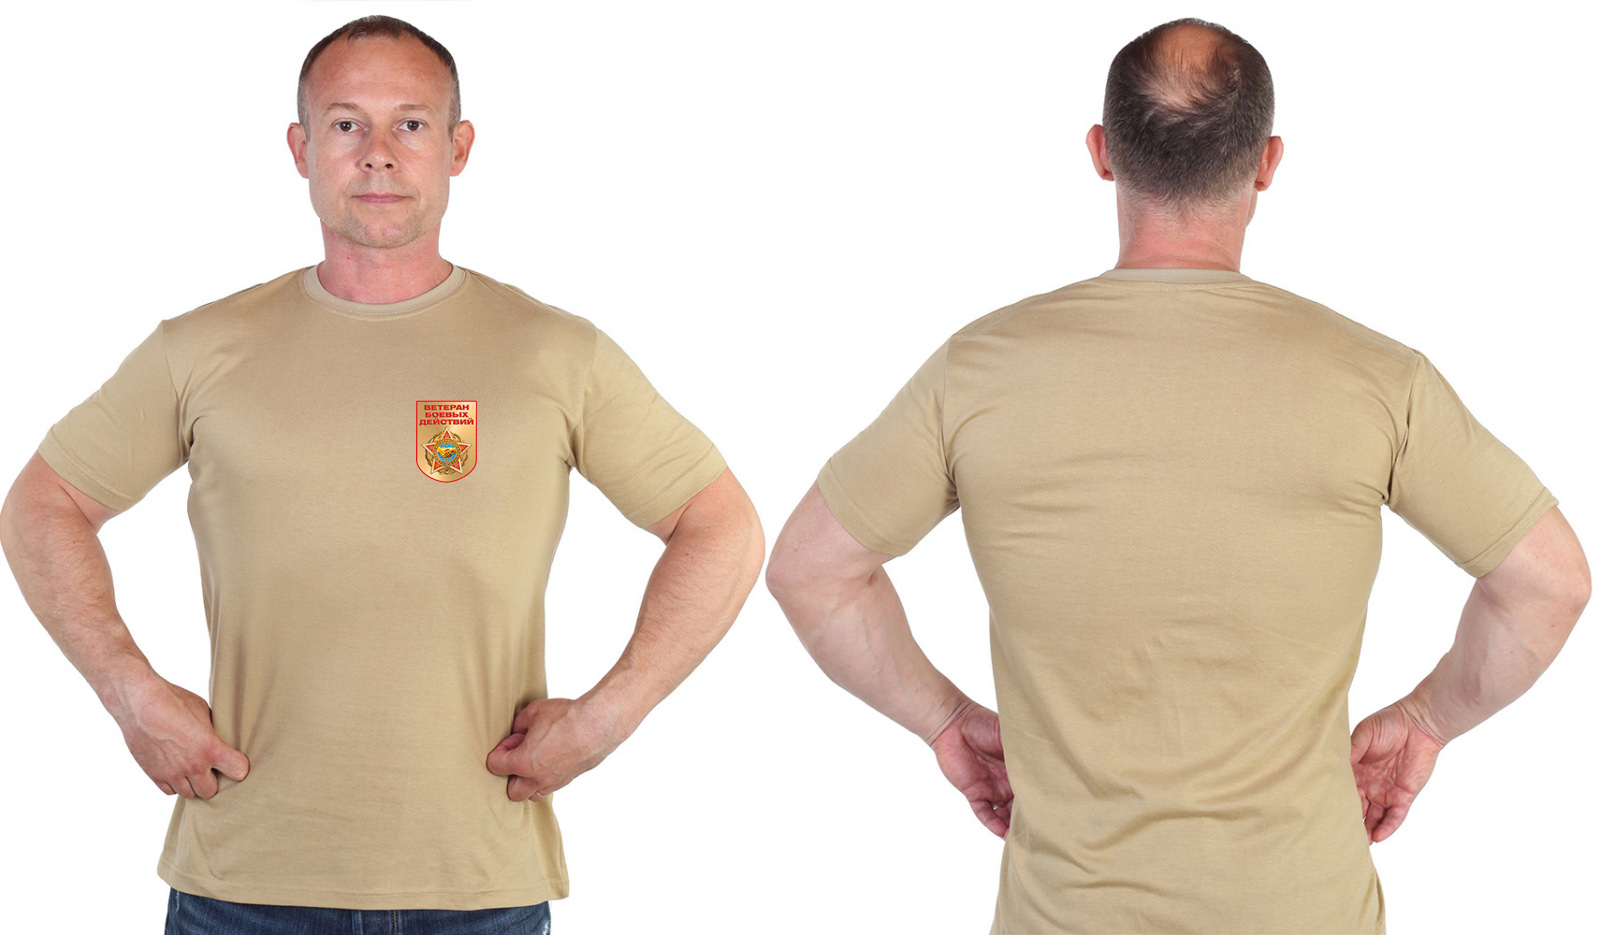 Песочная футболка с термотрансфером "Ветеран боевых действий" 